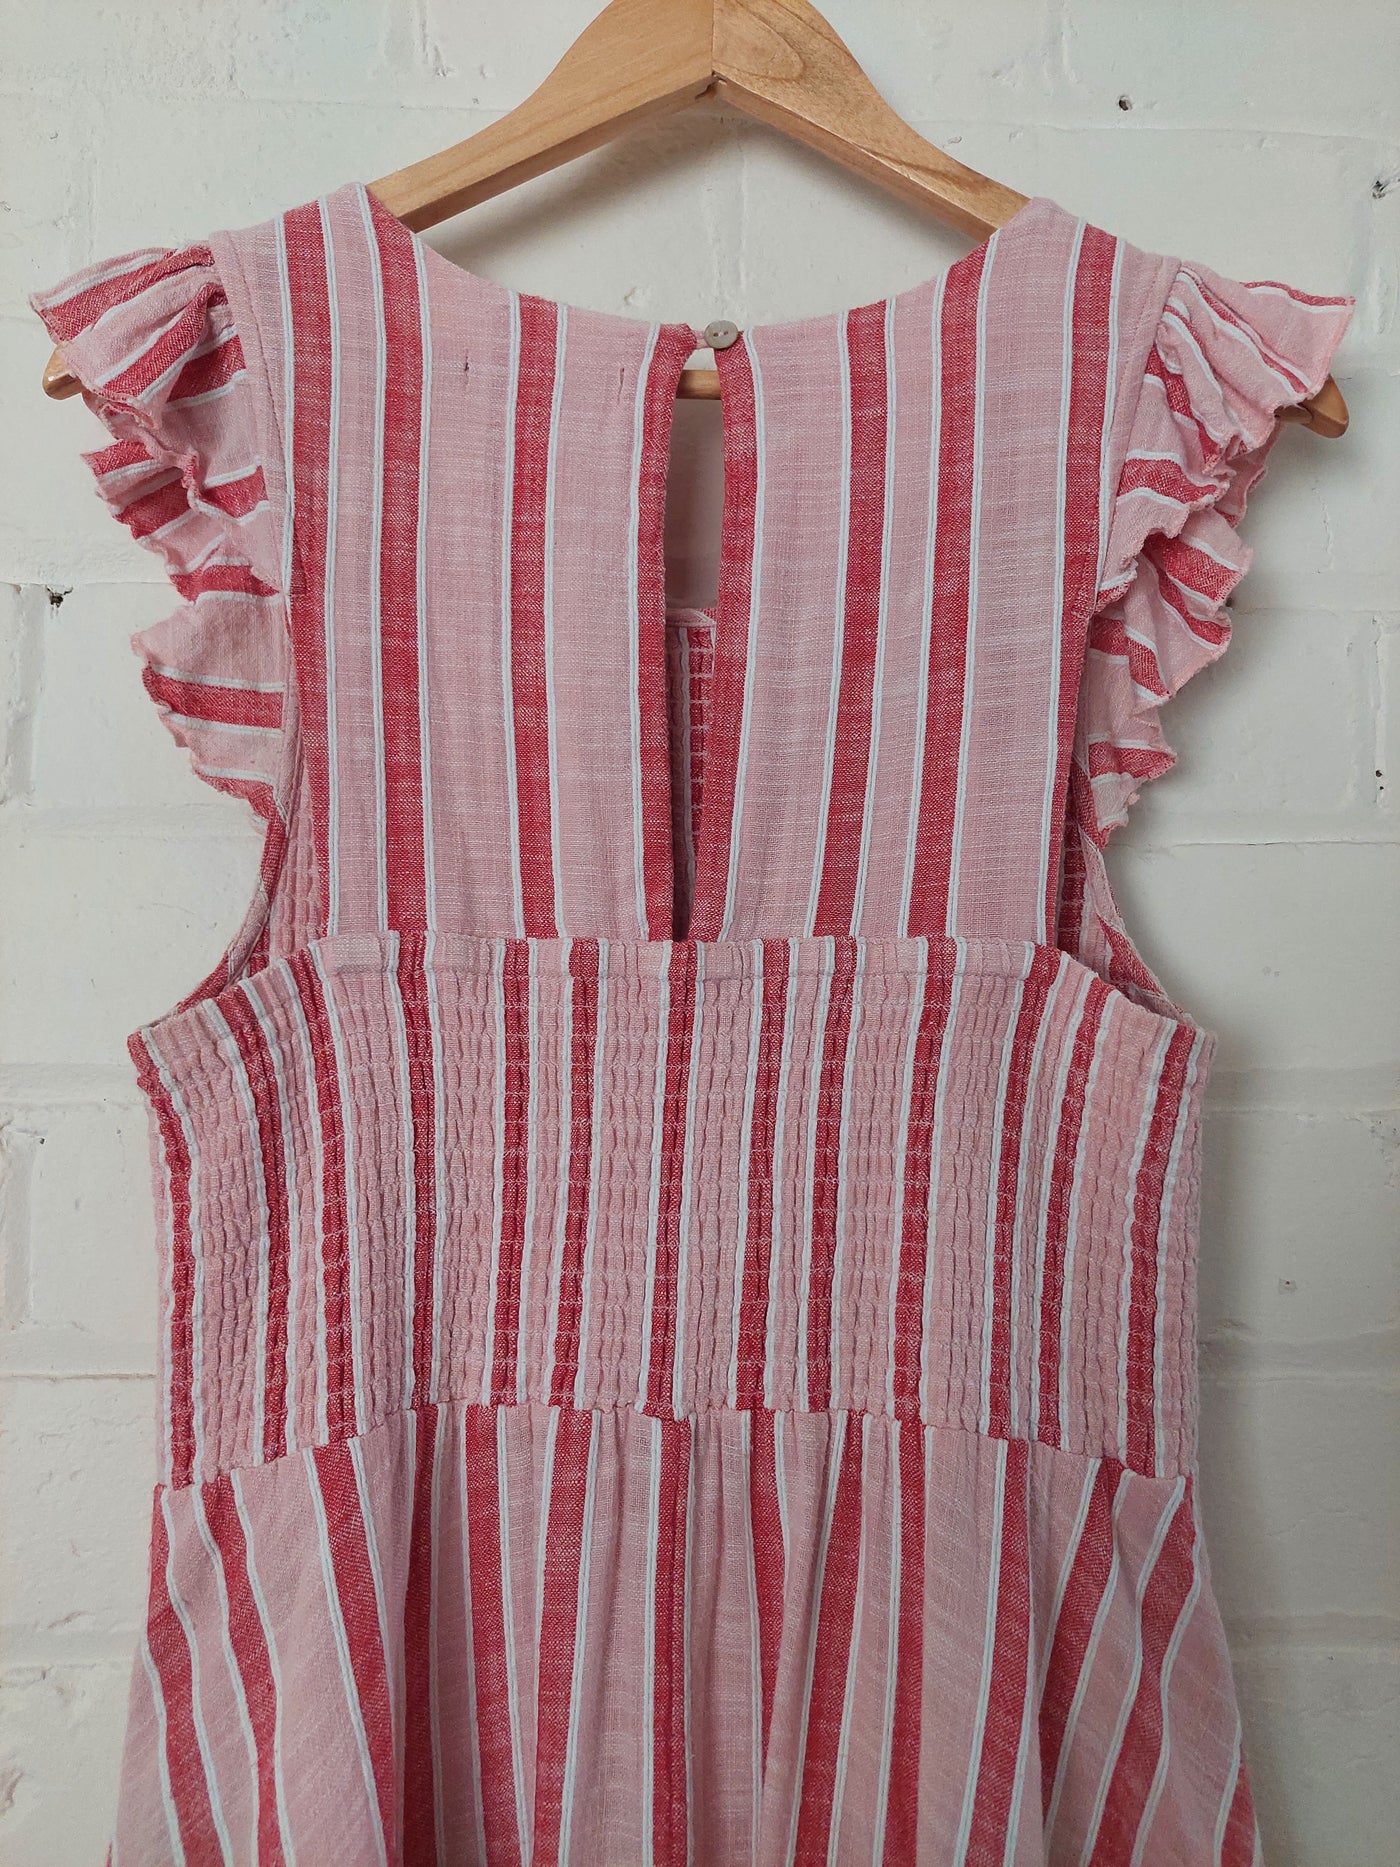 Mister Zimi 'Abbie' Midi Dress in Pink Stripe, Size 14